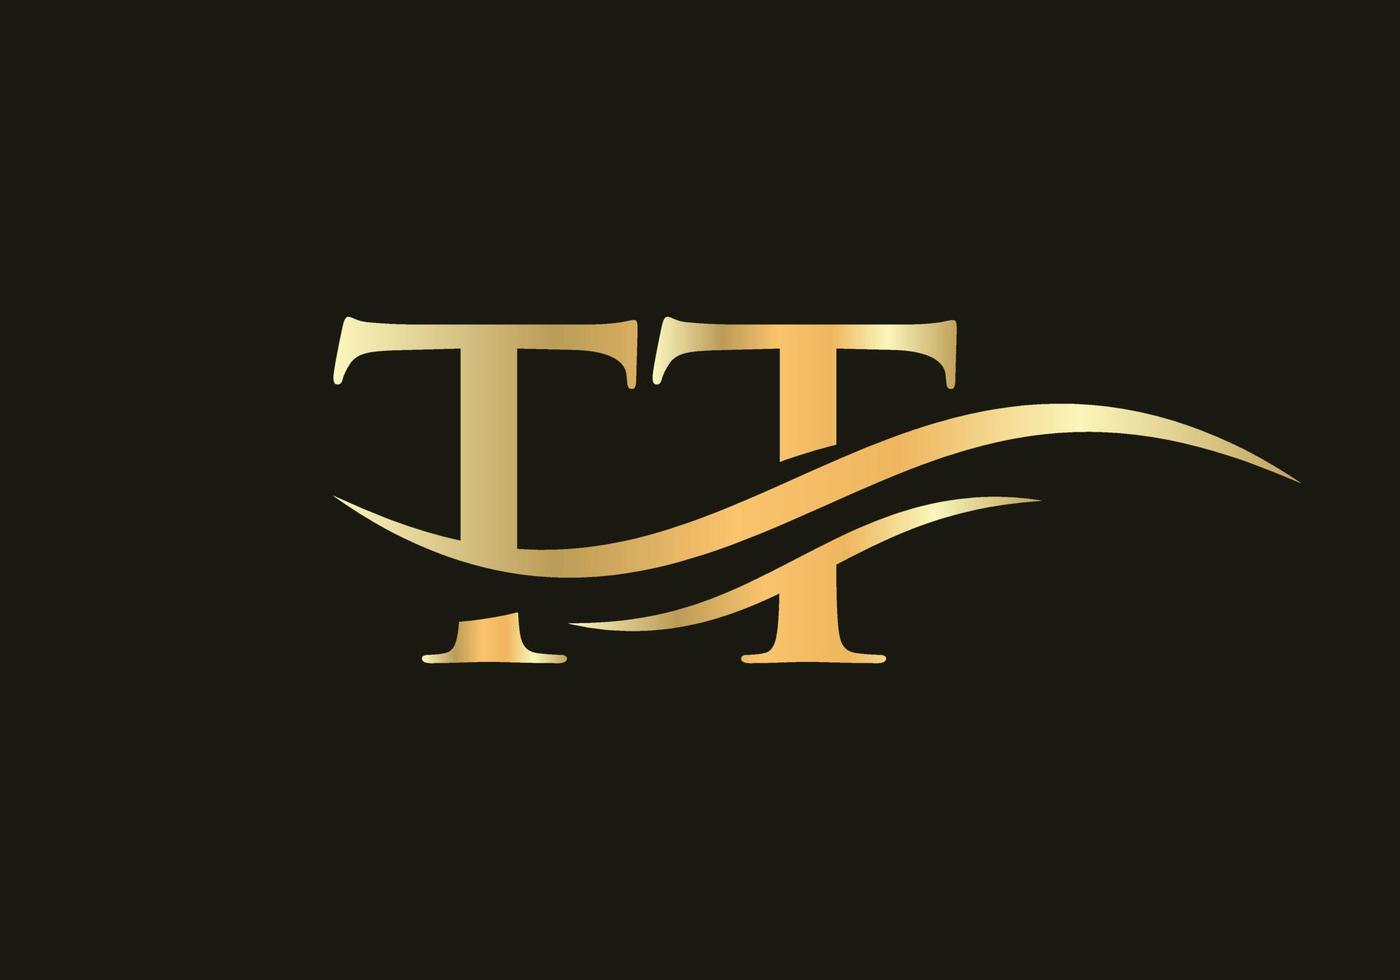 design moderno de logotipo tt para negócios e identidade da empresa. carta tt criativa com conceito de luxo vetor